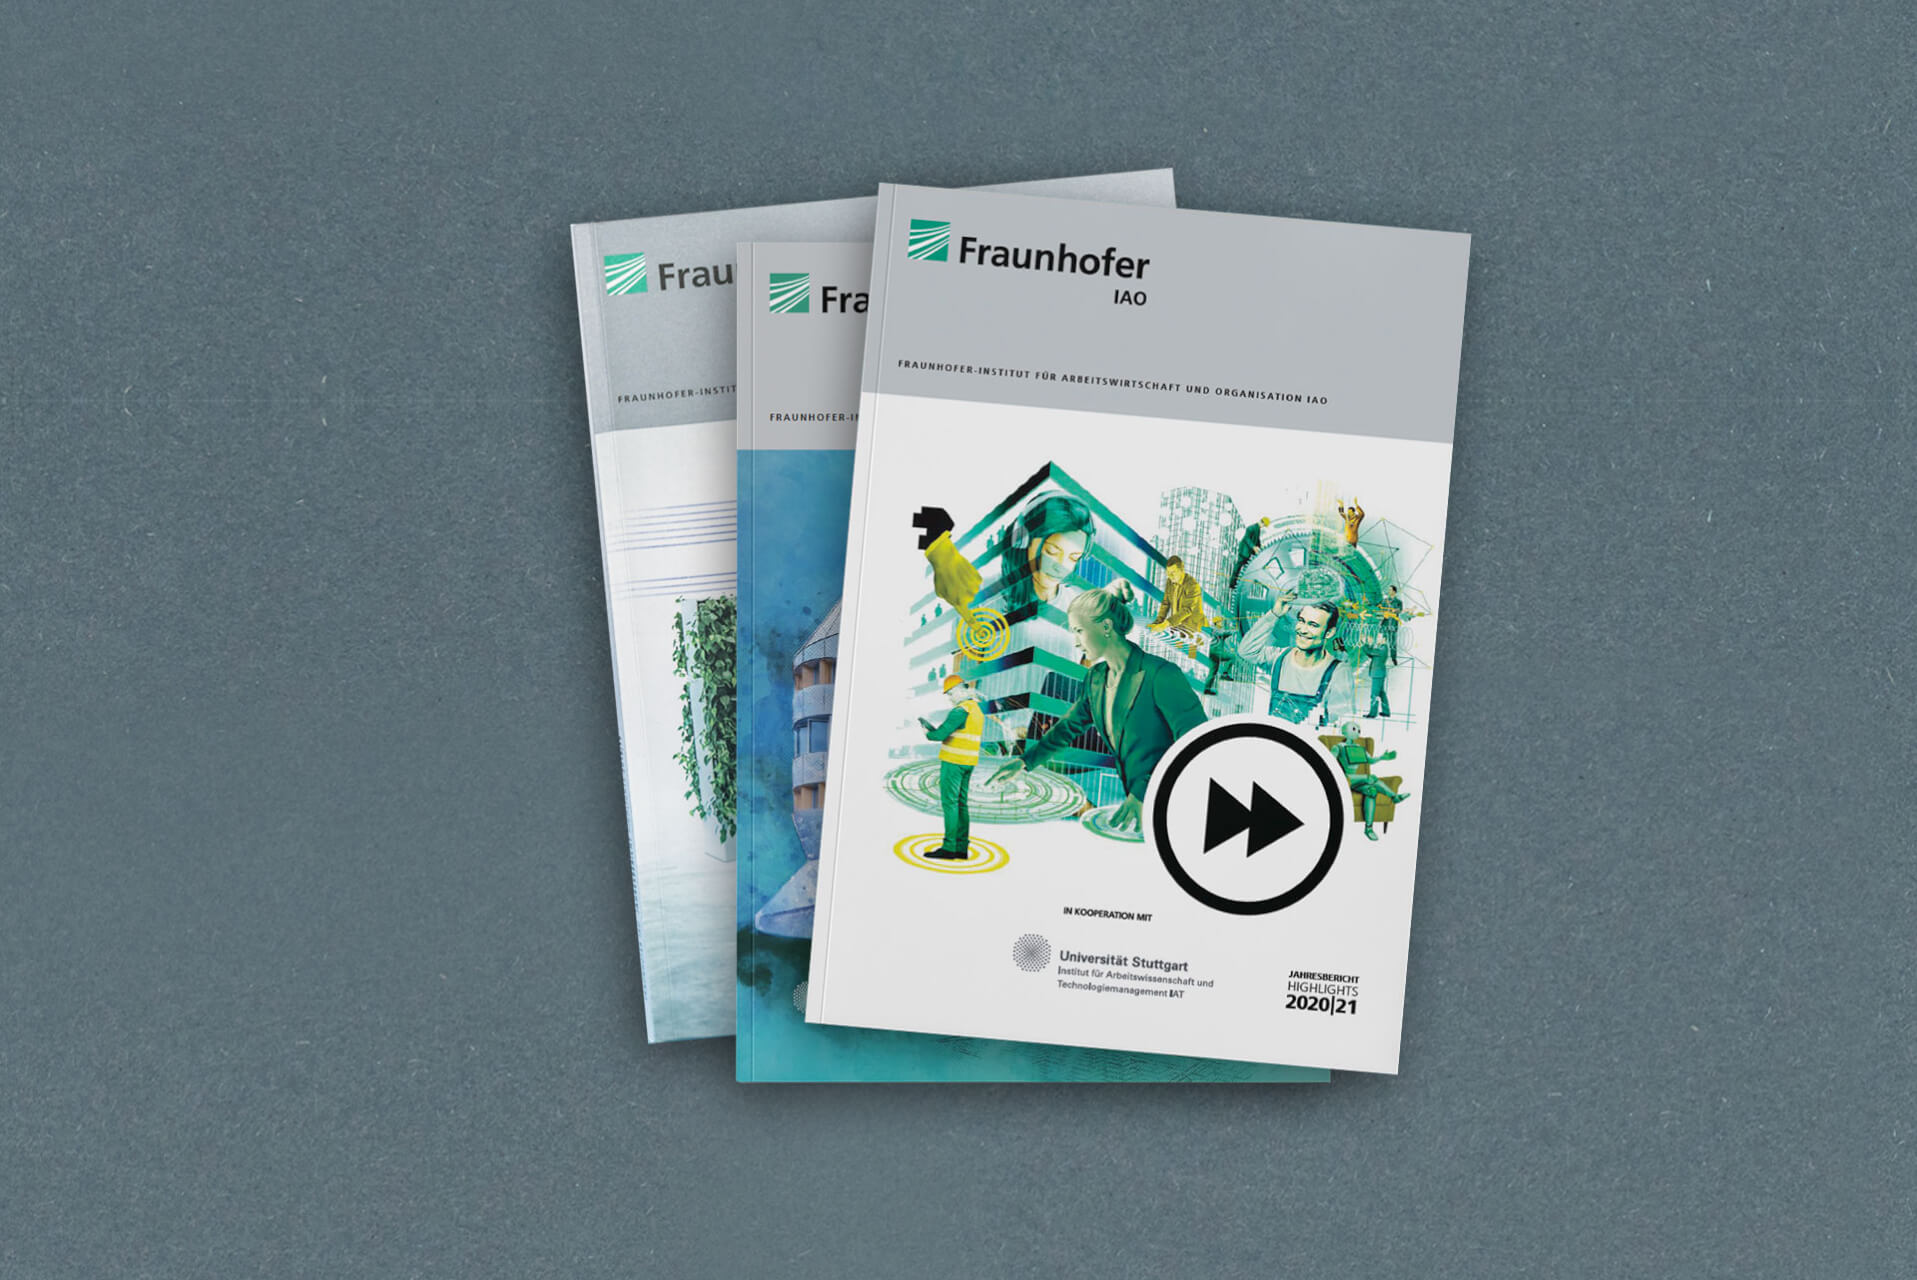 Alle Fraunhofer-Jahresberichte liegen aufgestapelt übereinander, der aktuelle liegt ganz oben. Das Cover ist eine Collage aus einem großen Bürogebäude sowie Menschen und ihrer Arbeit, die von technischem Fortschritt geprägt ist.